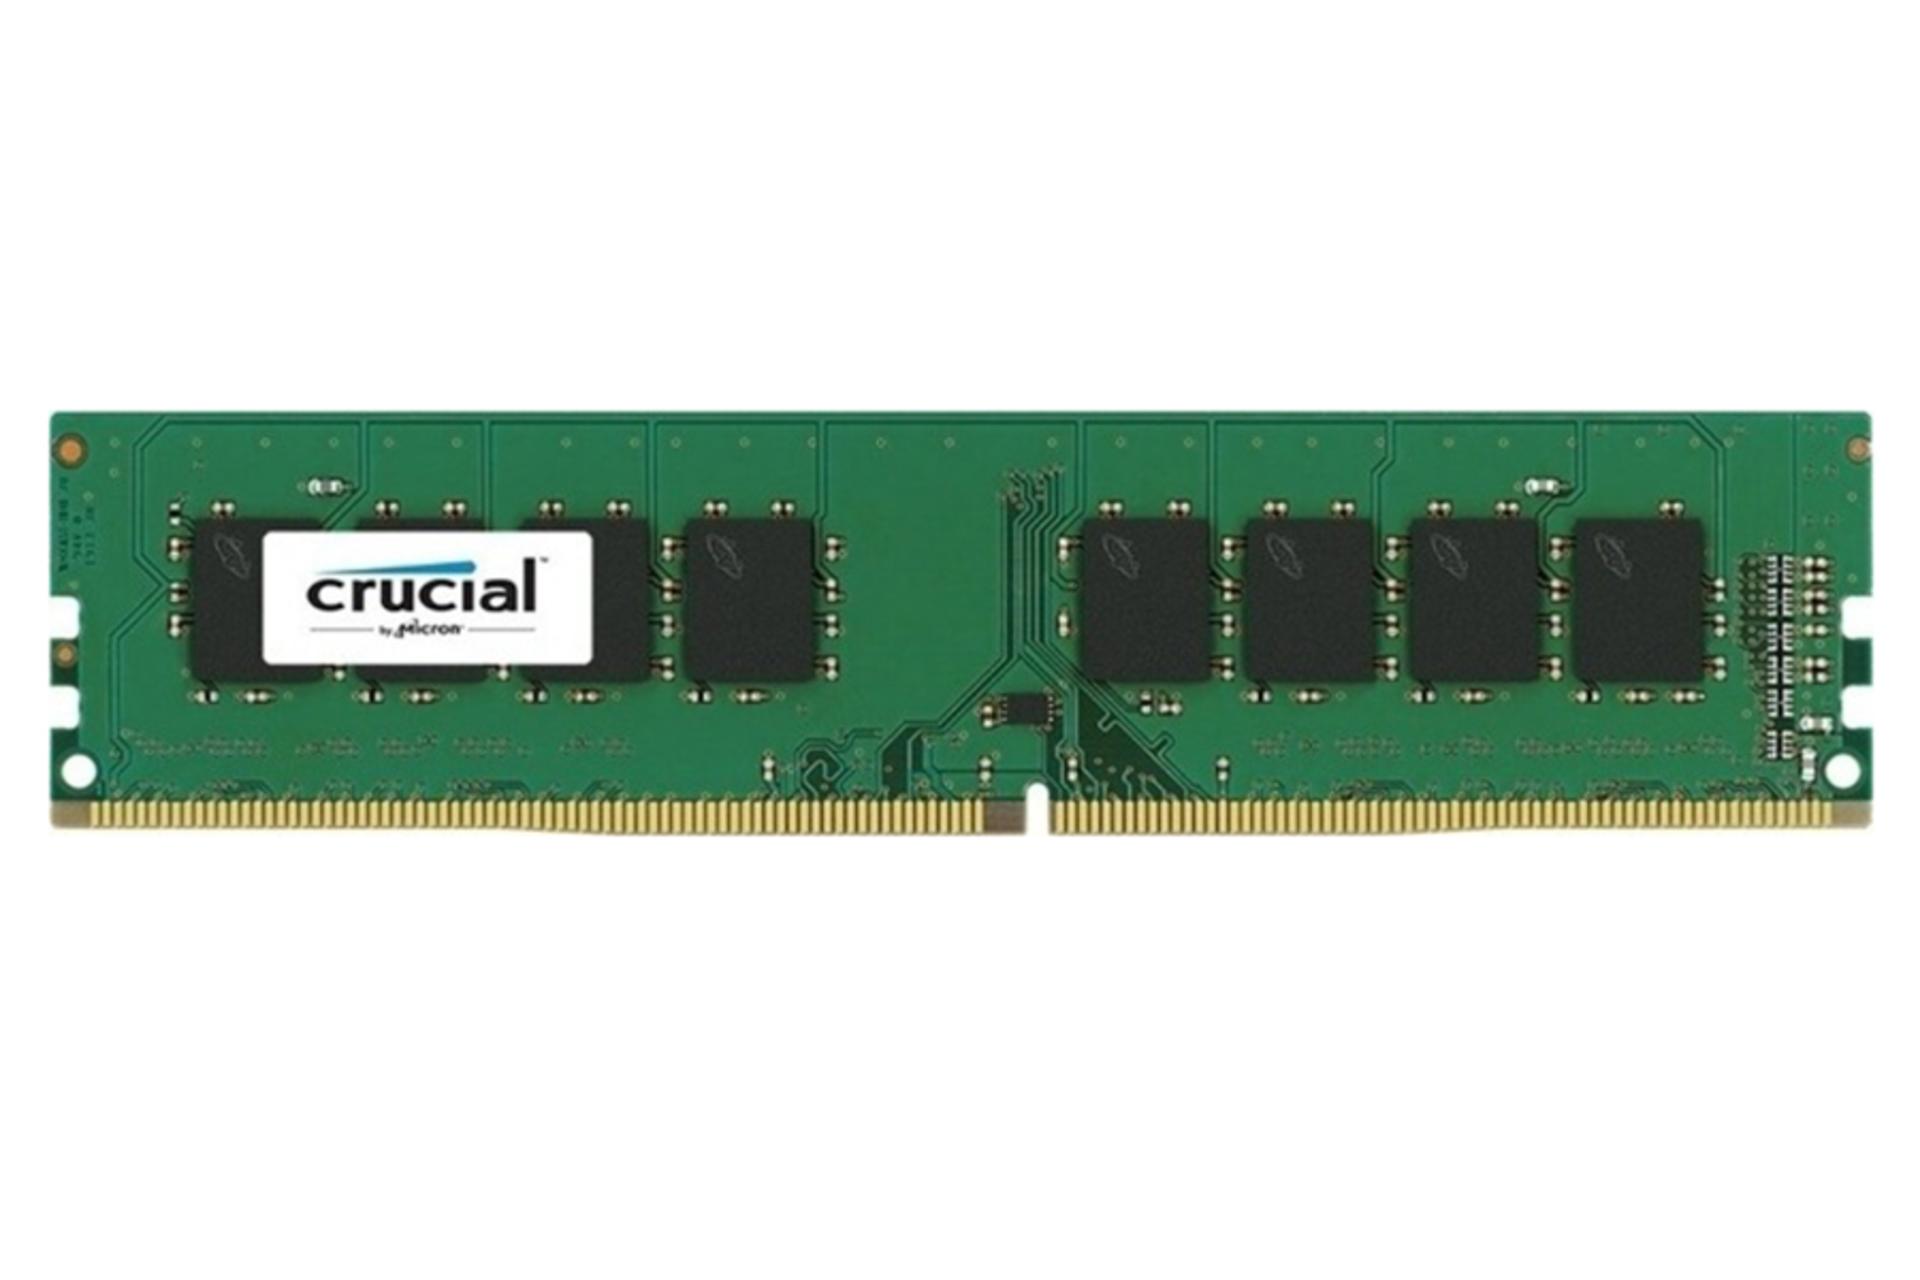 نمای جلو کروشیال CB16GU2666 ظرفیت 16 گیگابایت از نوع DDR4-2666